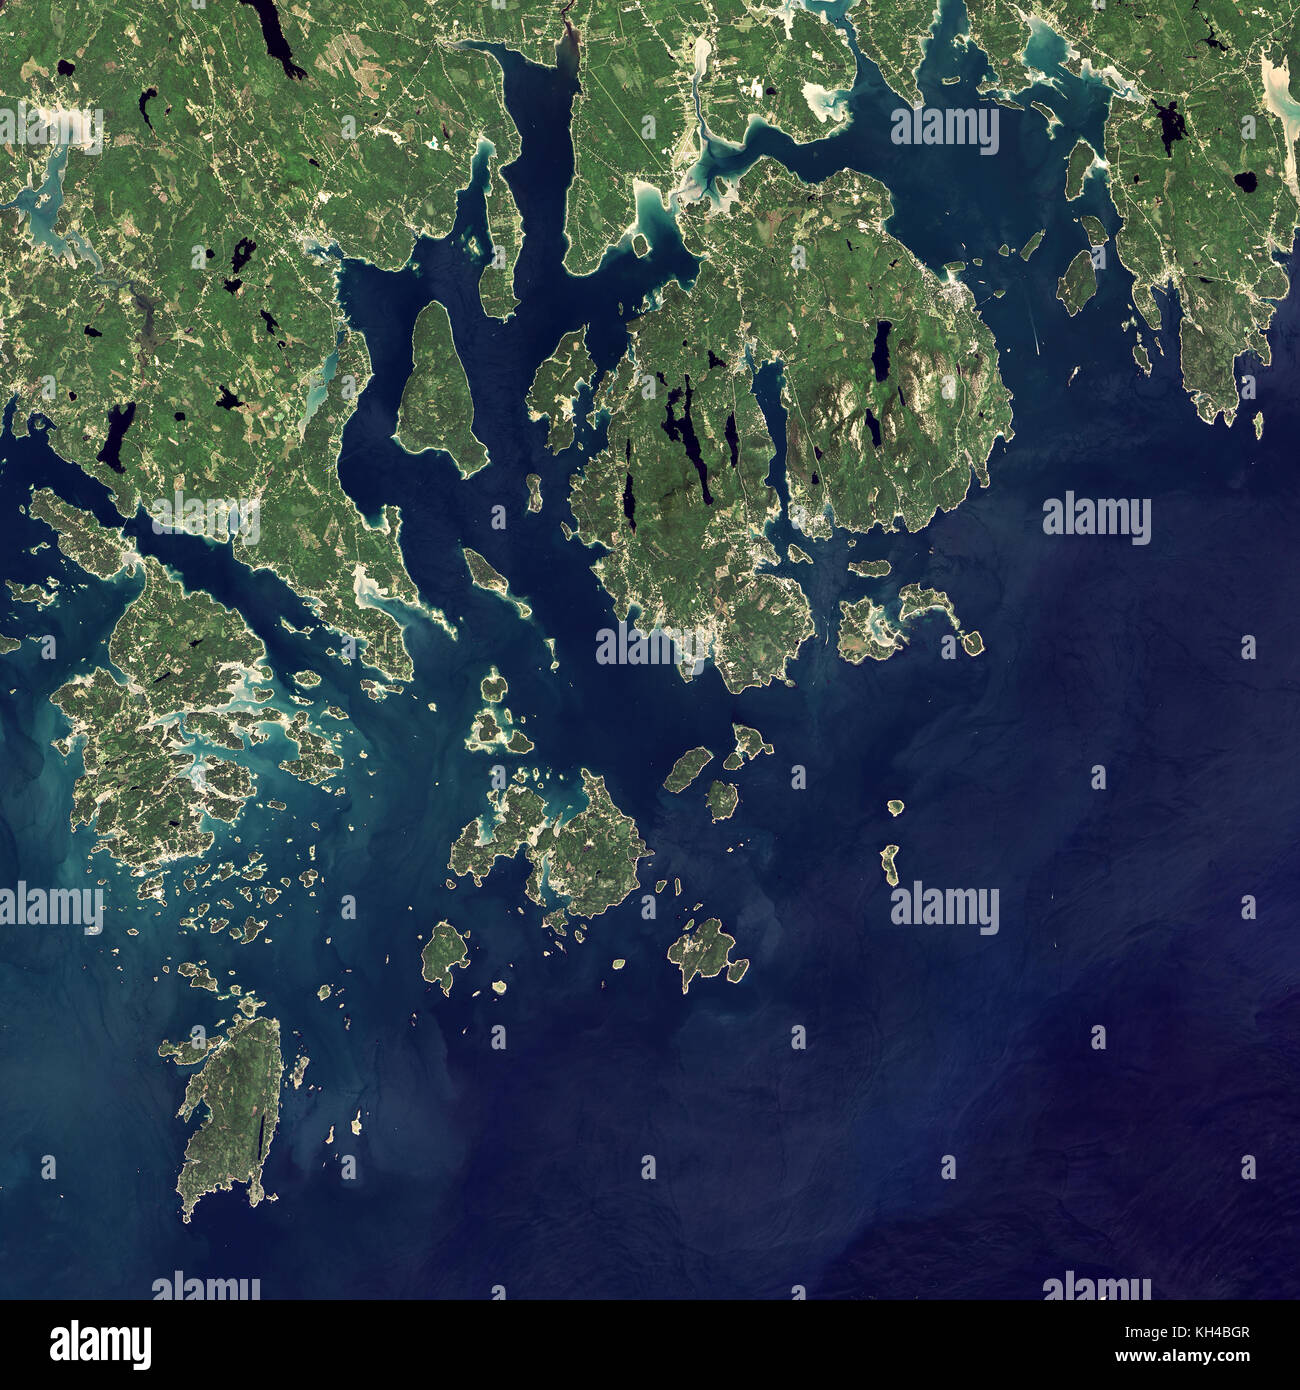 Acadia National Park, Maine, Satelliten Ansicht von Landsat 8 Sat. 6. September 2015, Bild: NASA Earth Observatory Bild von Jesse Allen, Usi Stockfoto